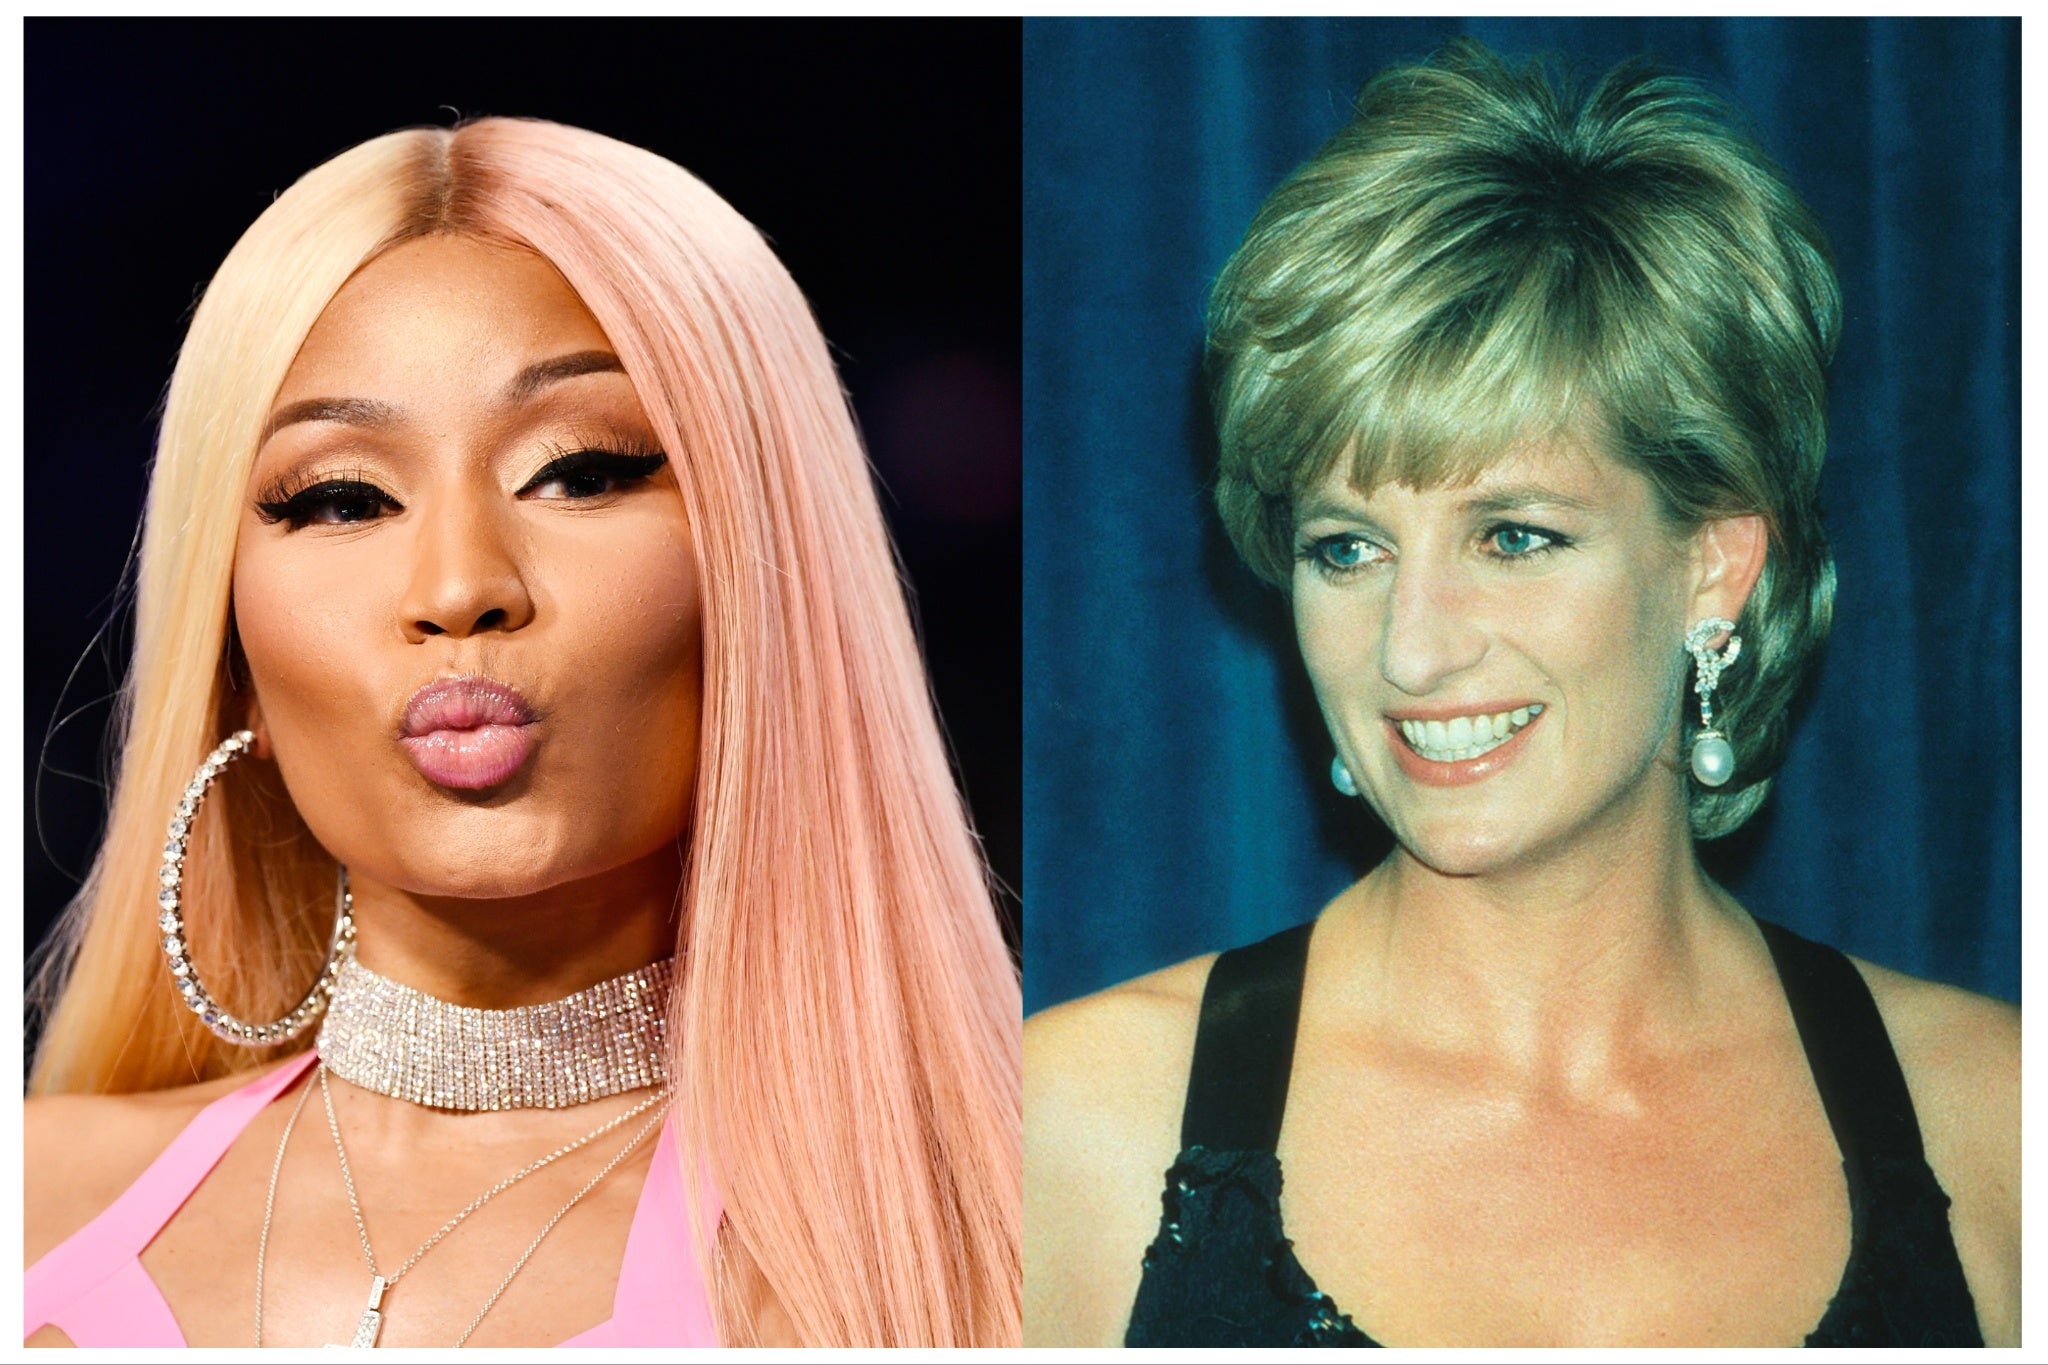 Nicki Minaj paid tribute to Diana, Princess of Wales